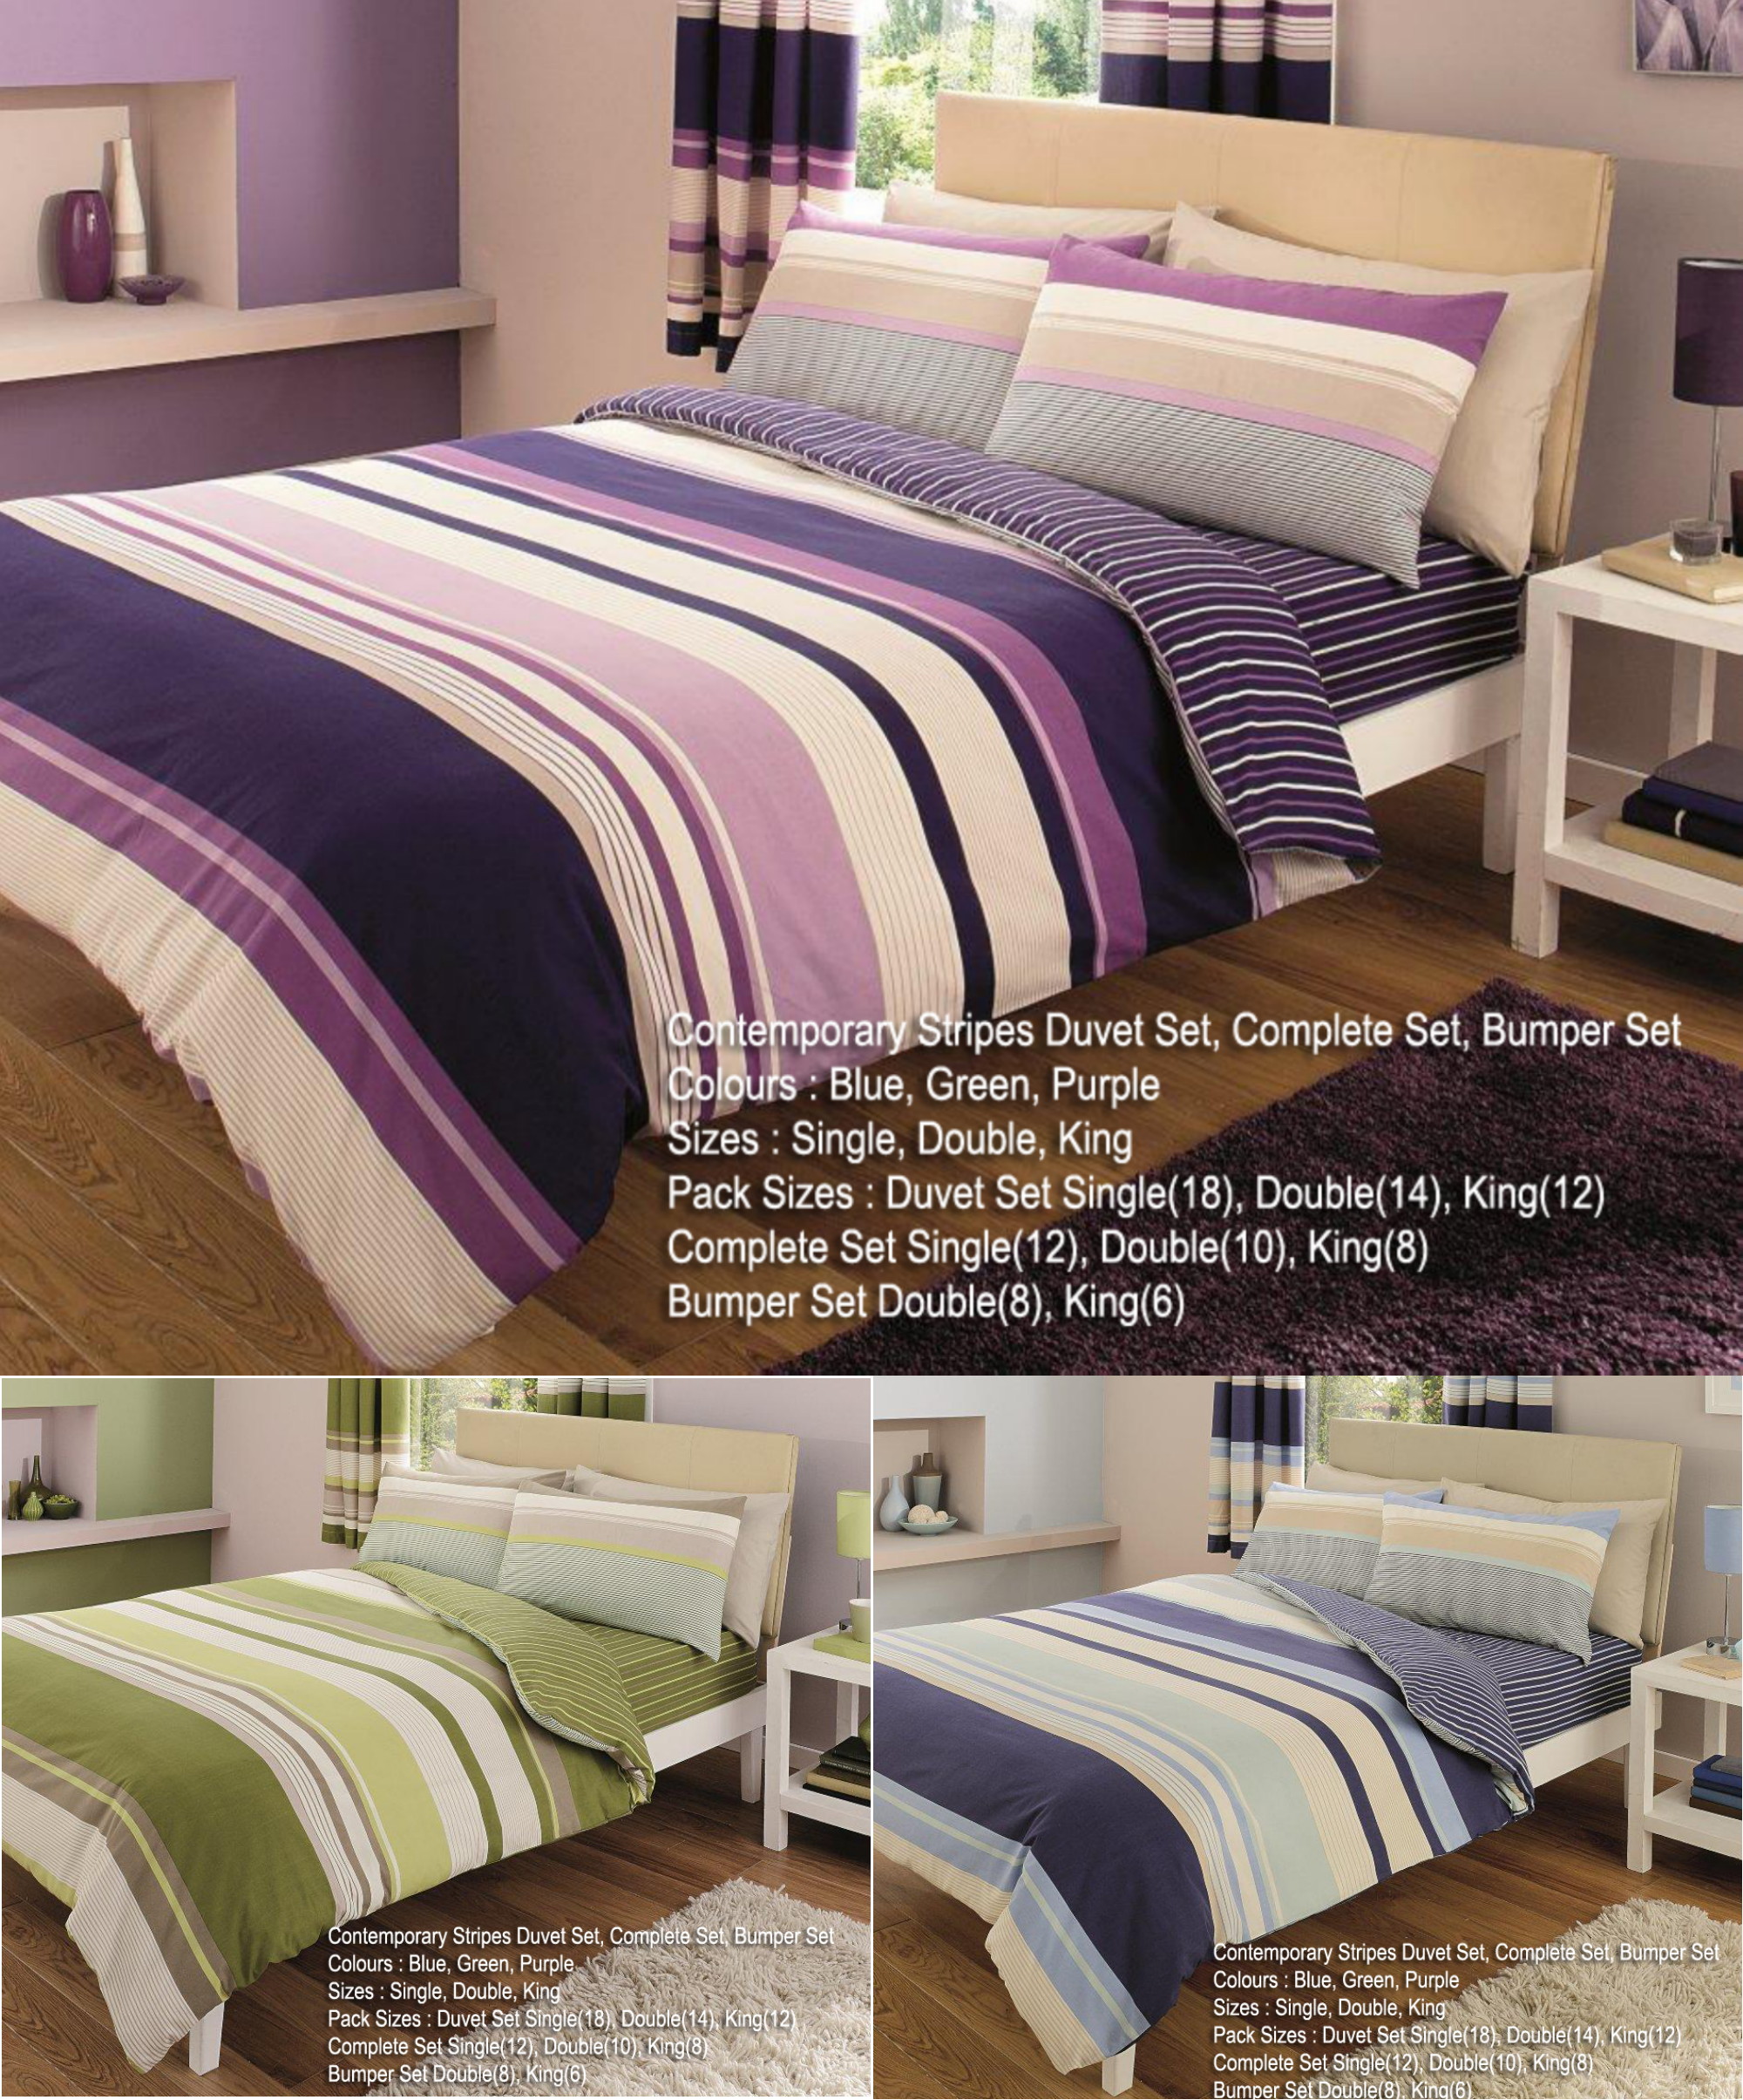 Contemporary Printed Duvet Cover Set For Home Bedding Ebay